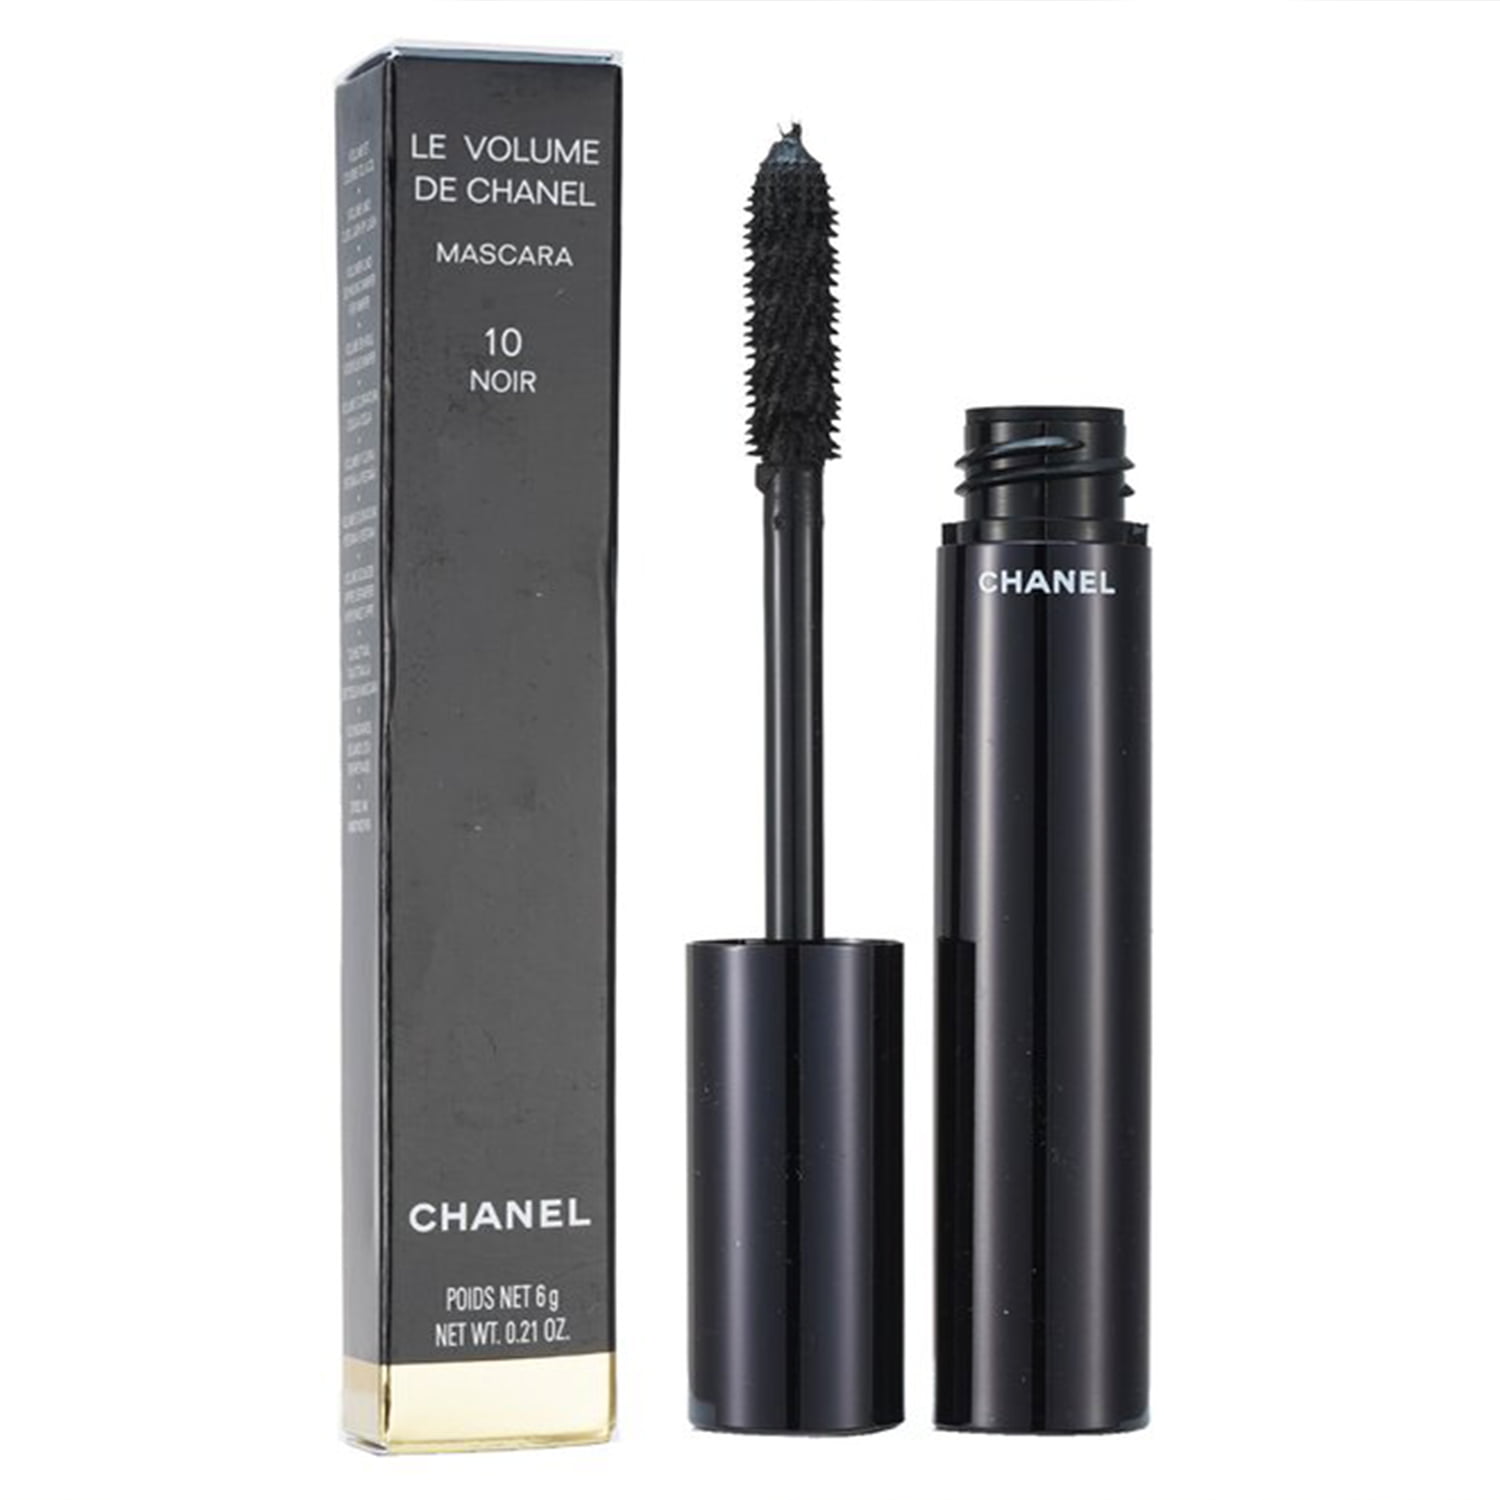 Artifact Patronise specifikation Le Volume De Chanel Mascara - # 10 Noir - 6g/0.21oz - Walmart.com